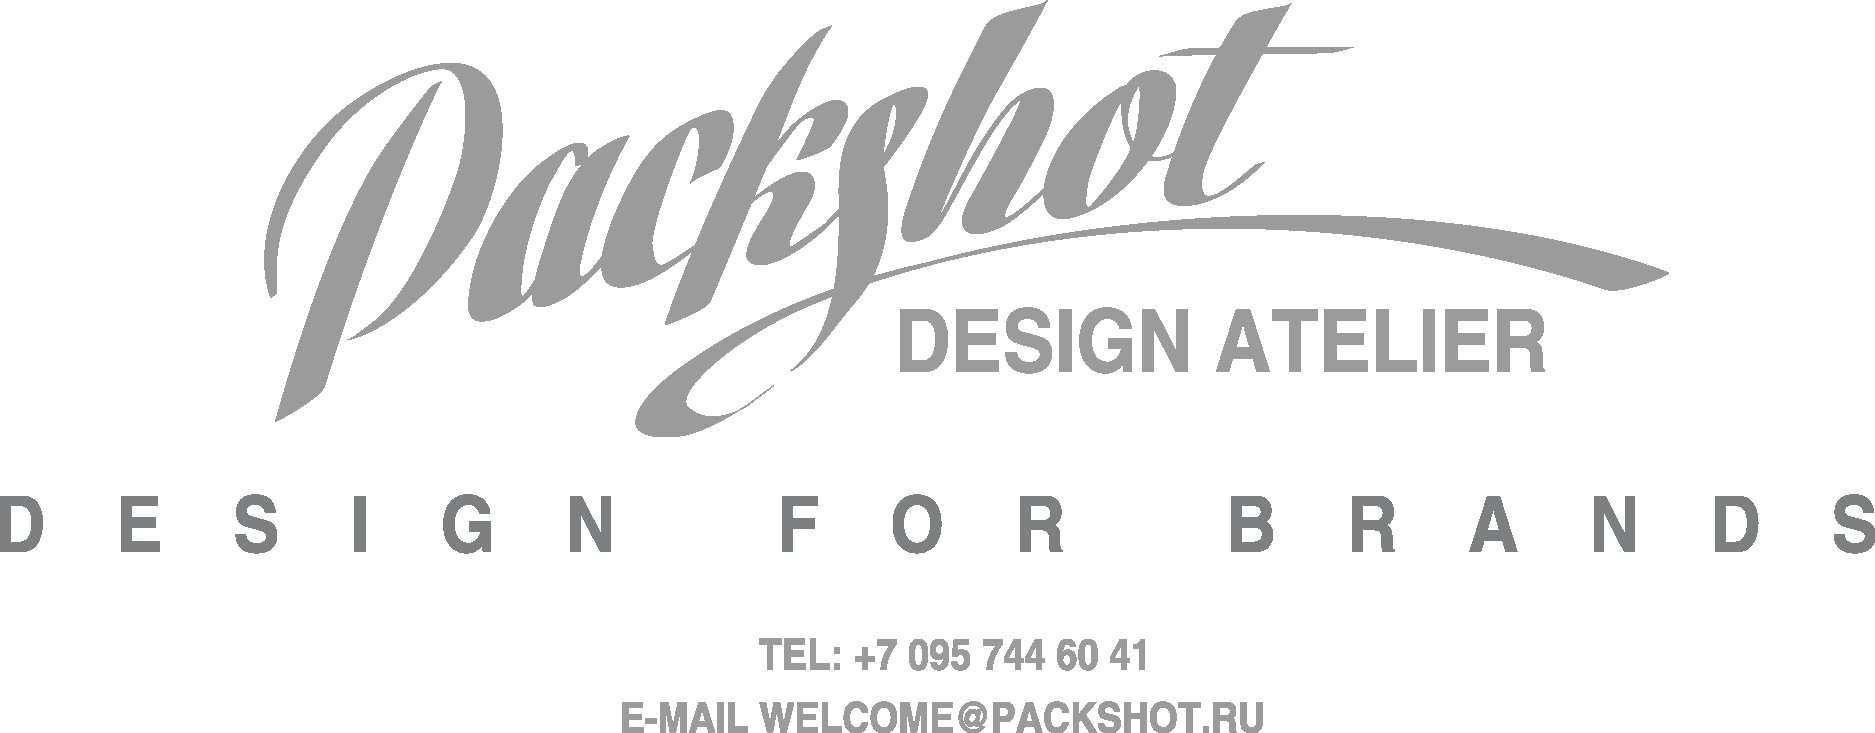 Packshot Design Atelier Logo Vector - (.Ai .PNG .SVG .EPS Free Download)